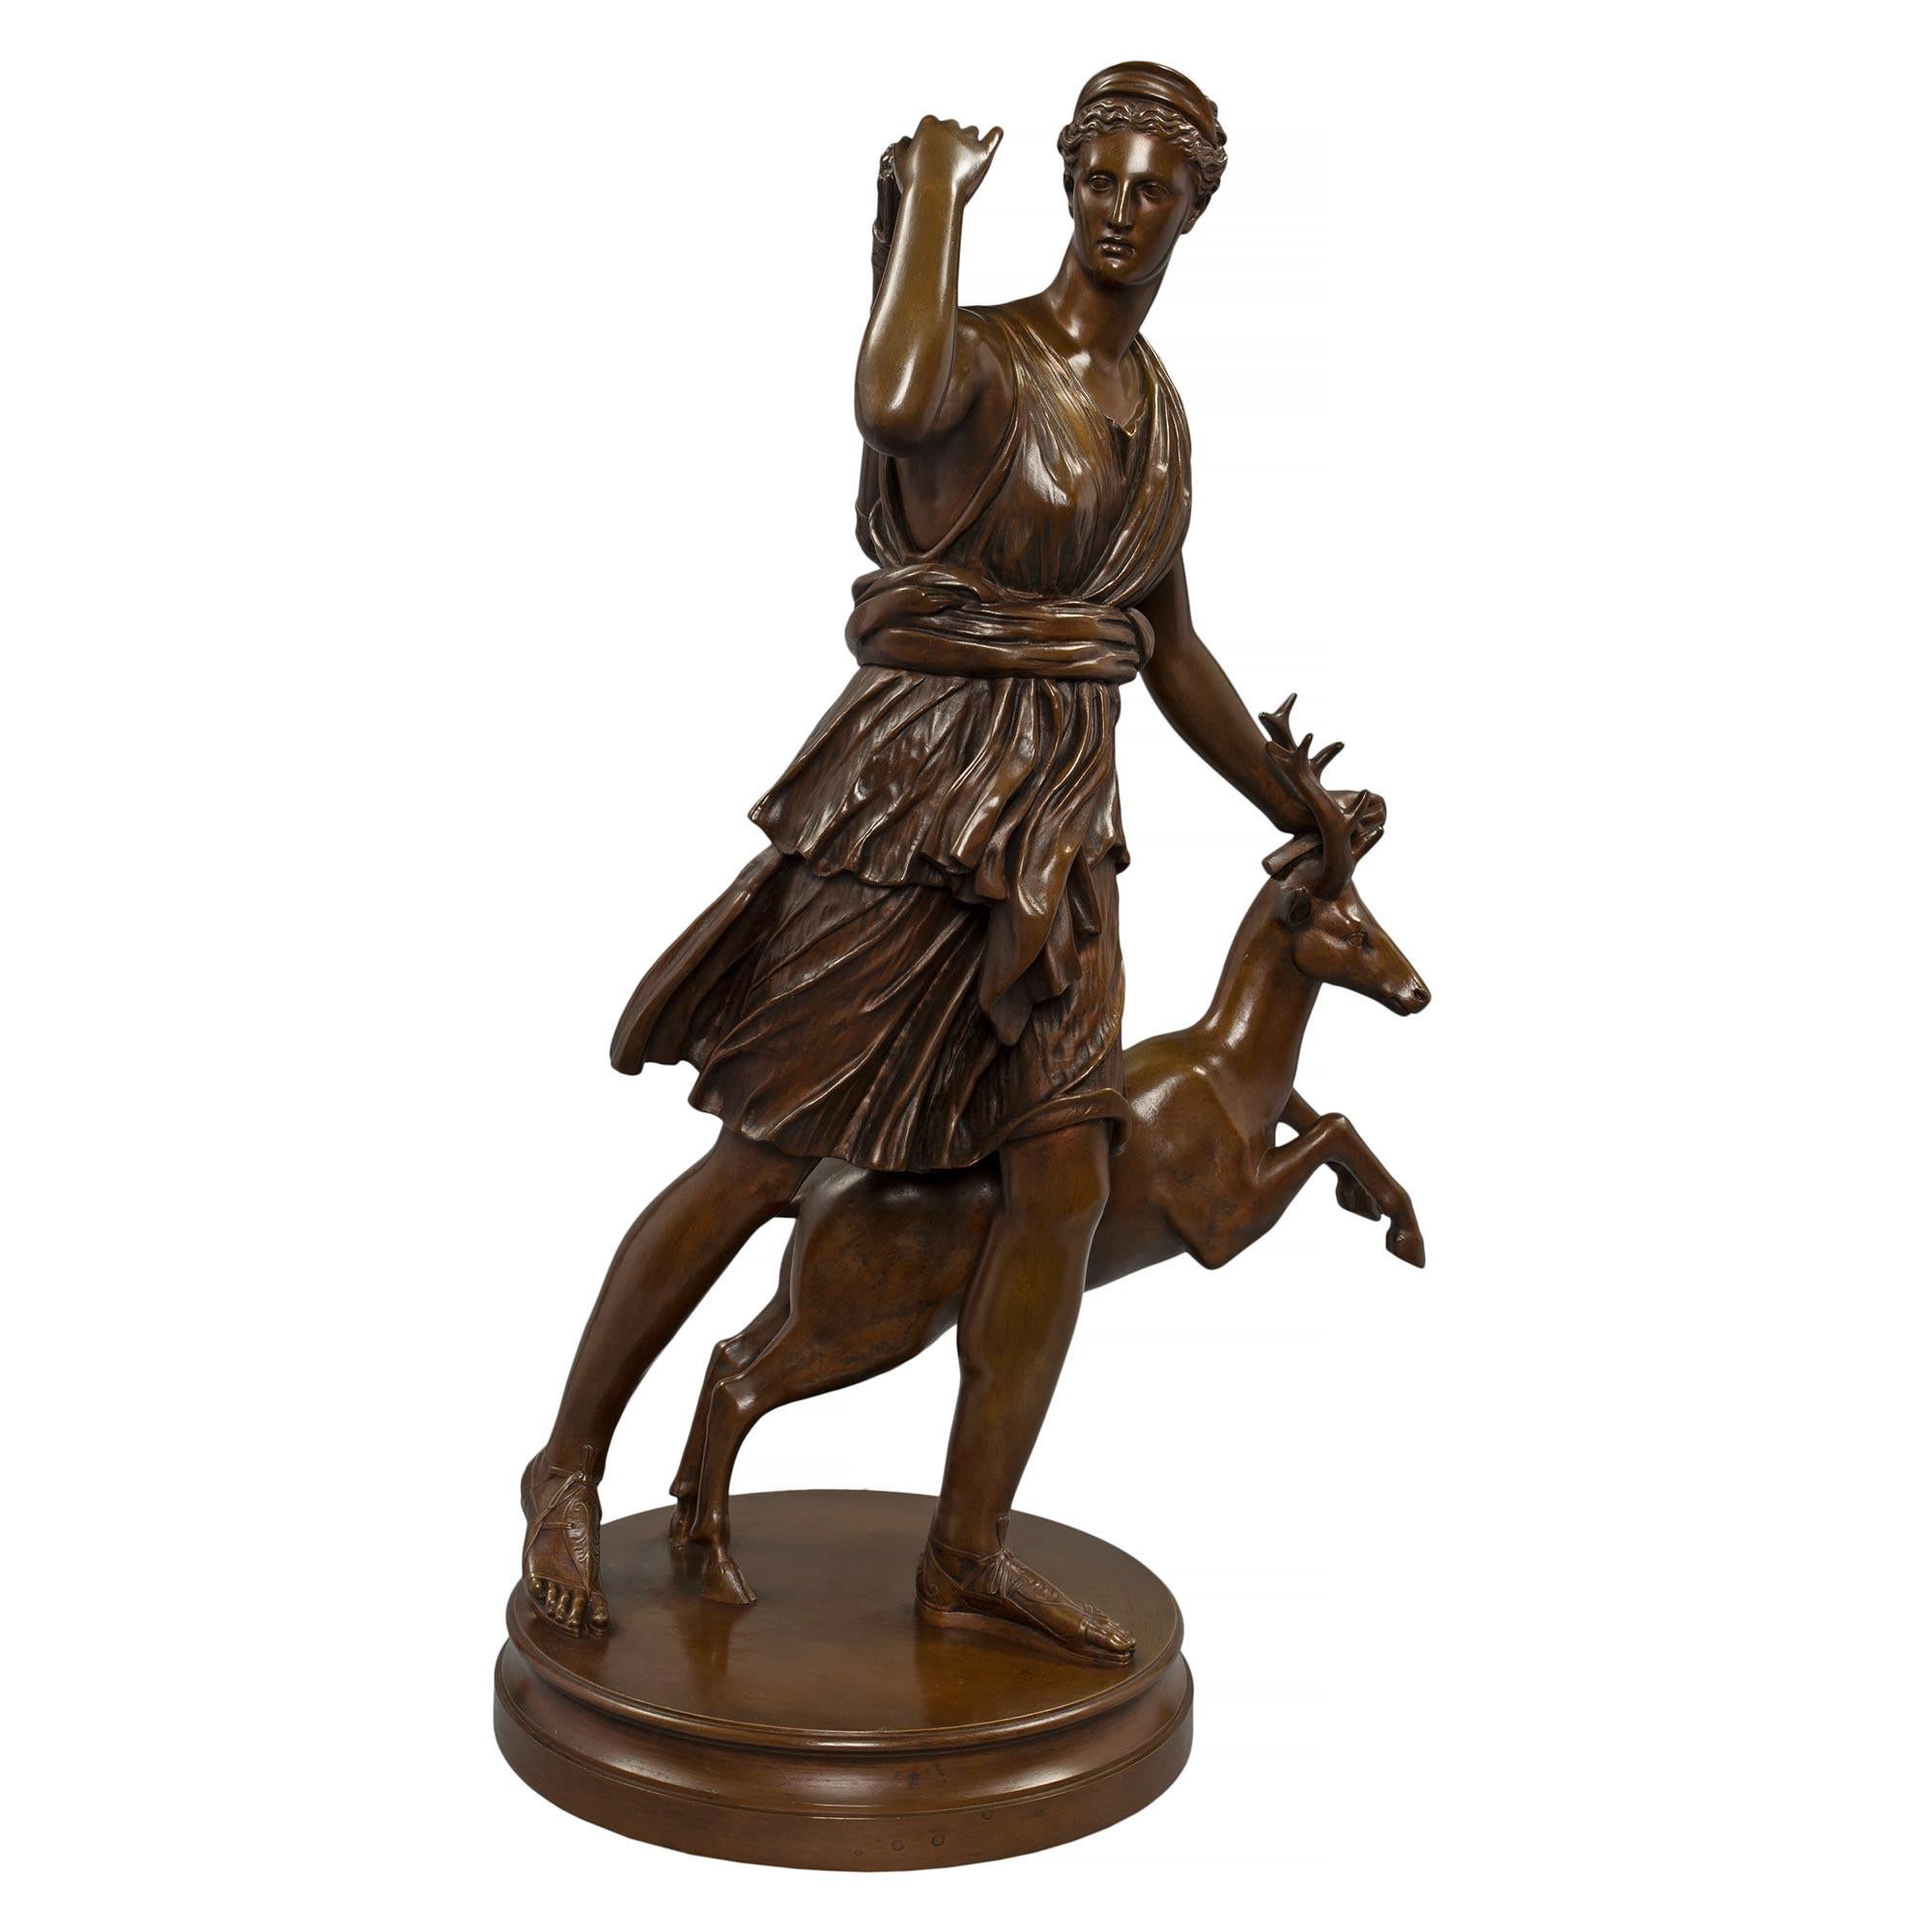 Sensationnelle statue en bronze patiné de style Louis XVI, datant du milieu du XIXe siècle, représentant Diane chasseresse, signée par Barbedienne. Diana, vêtue d'une tenue classique, tend la main derrière son épaule pour sortir un arc de son